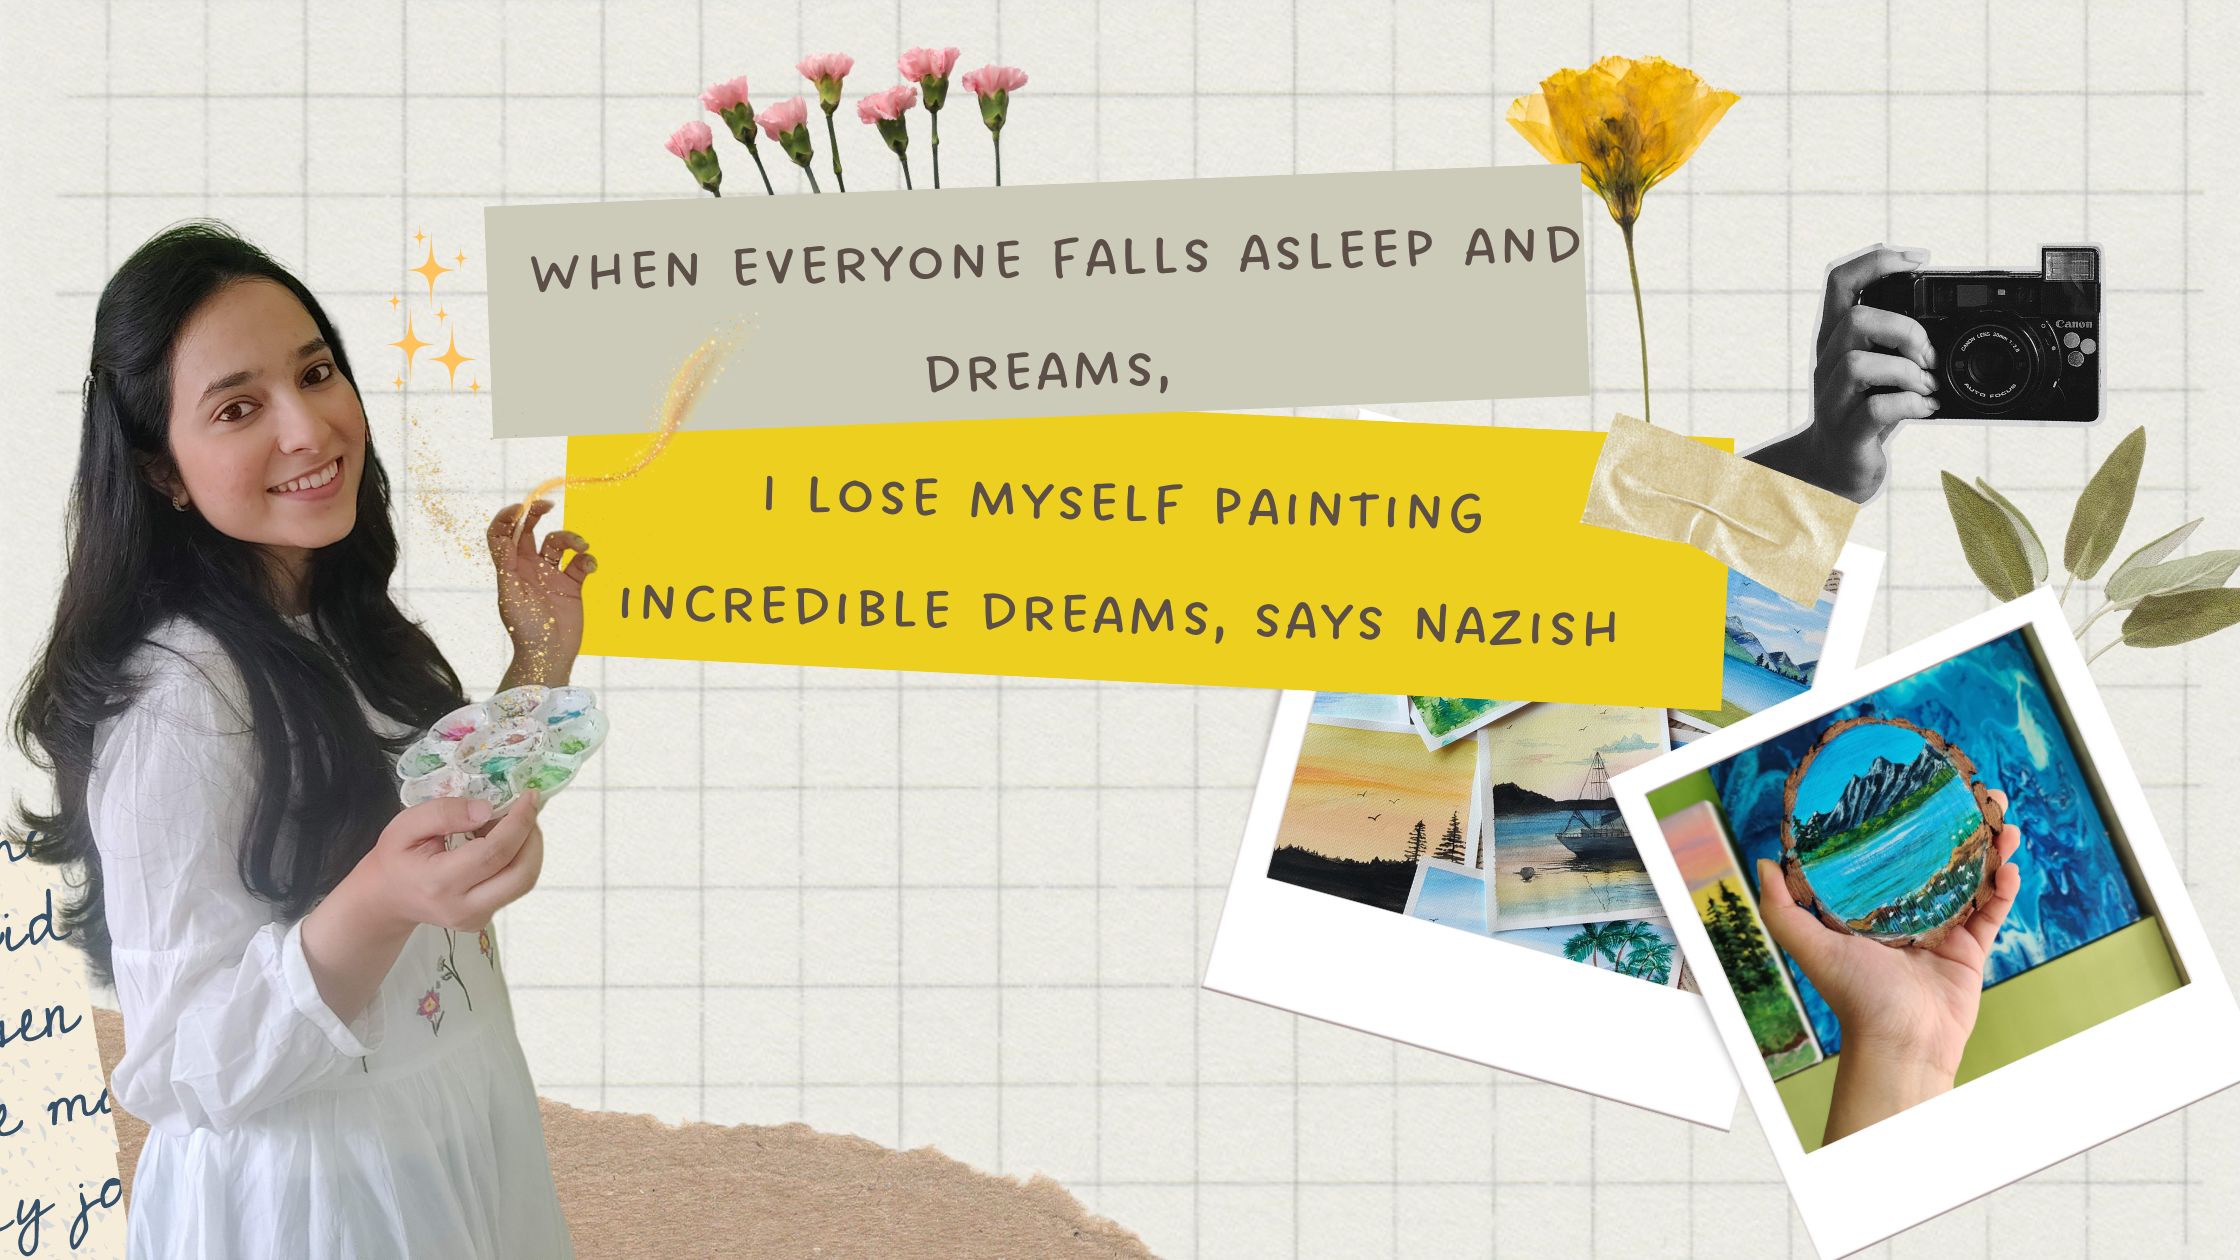 When everyone falls asleep and dreams, I lose myself painting incredible dreams, says Nazish